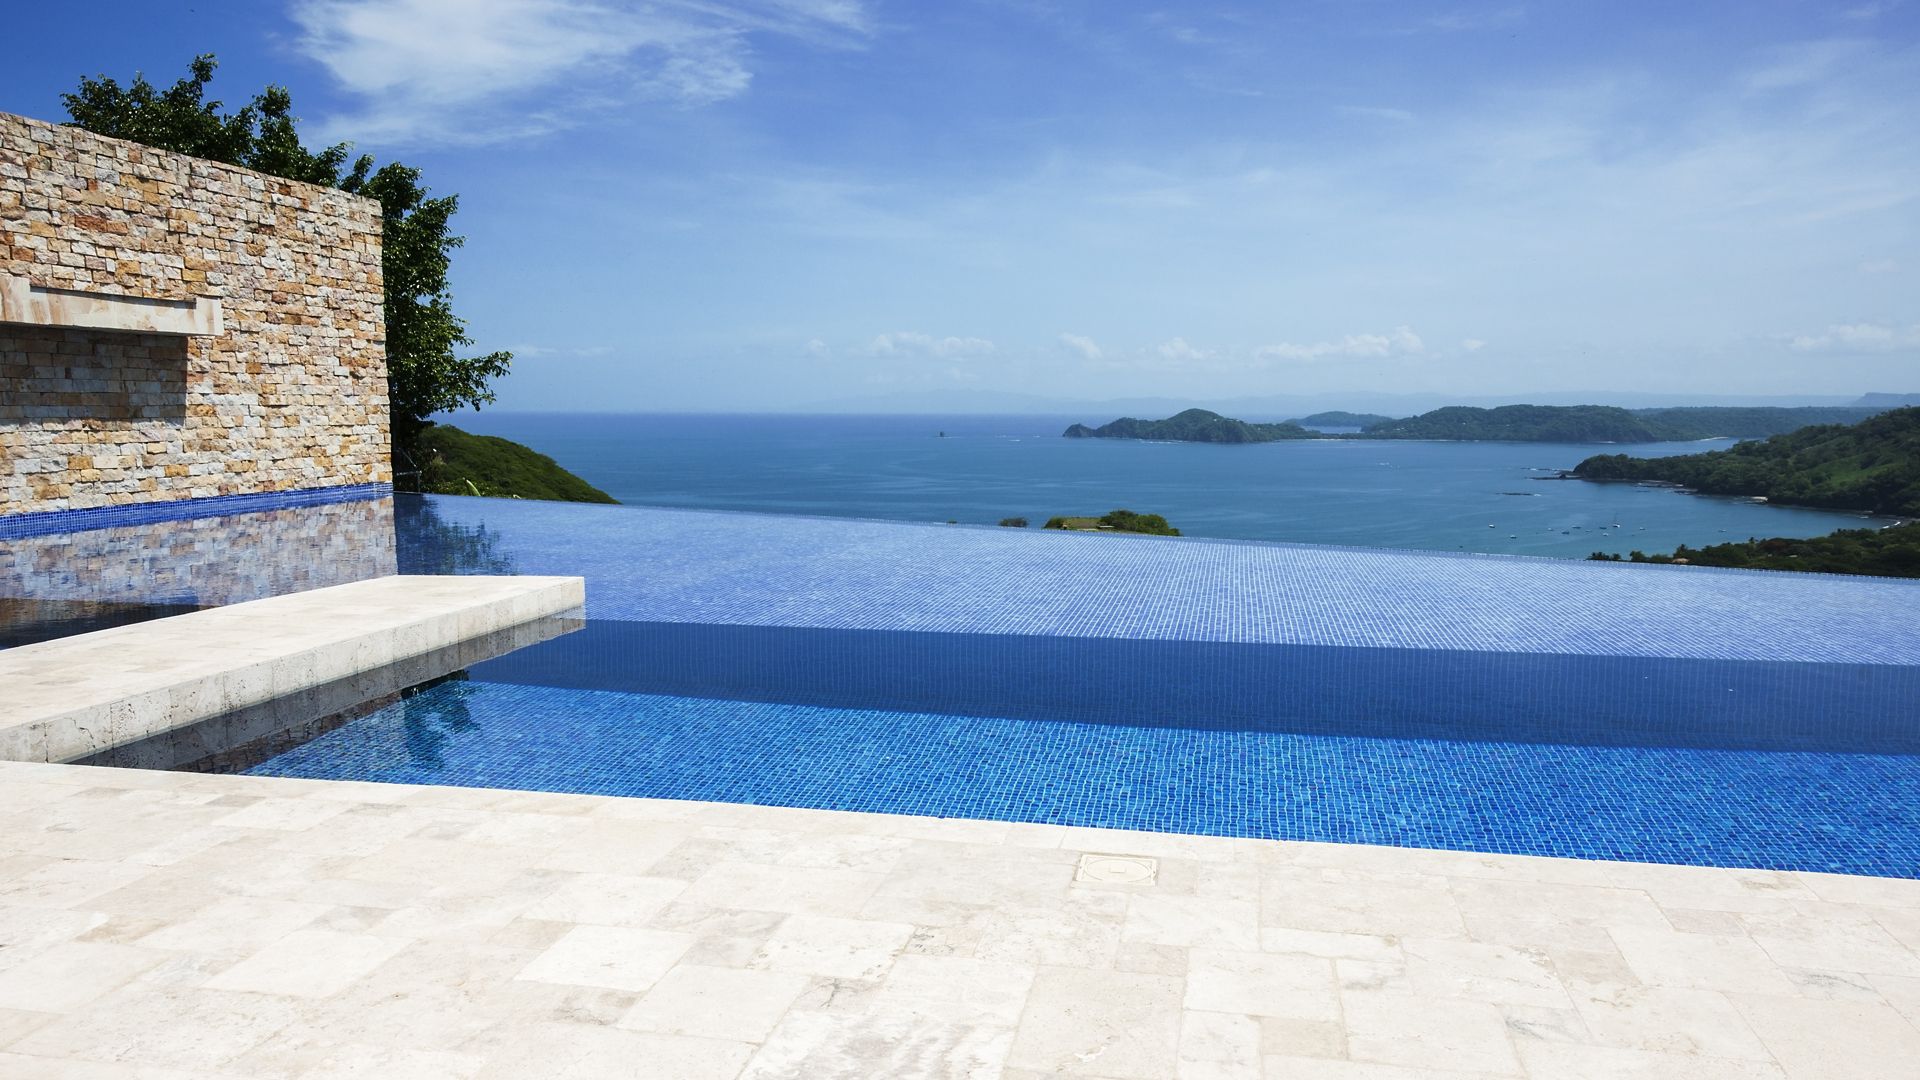 Uma piscina infinita que alinha com o horizonte e com rebordos invisíveis é irresistivel, prática e a sua extensão visual reconforta o olhar.